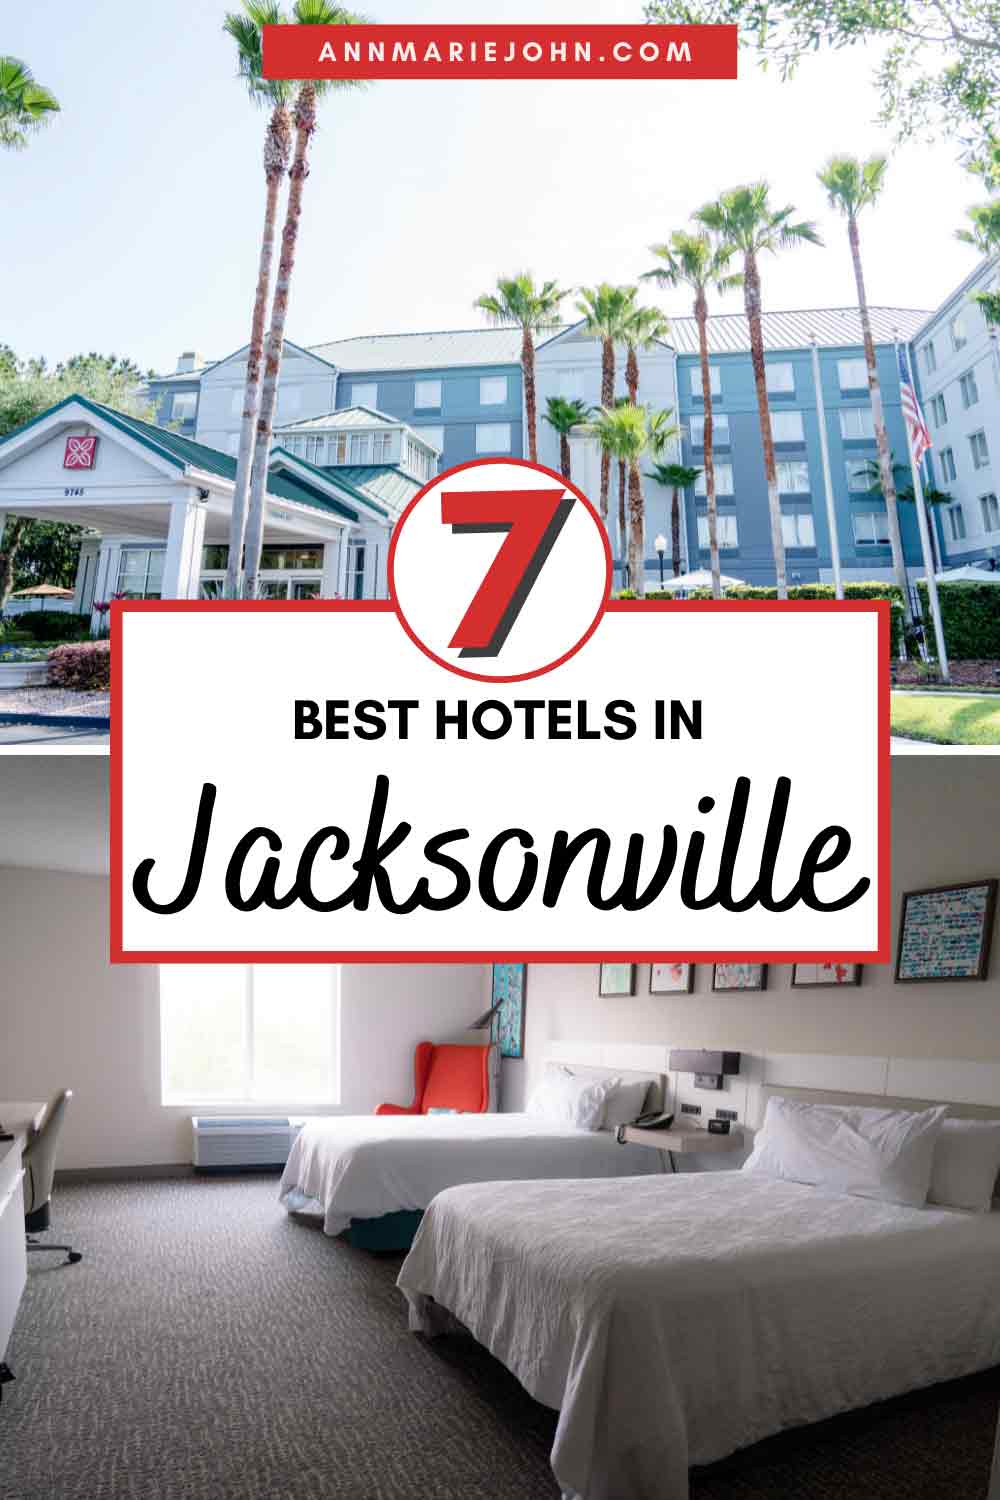 Best Hotels in Jacksonville